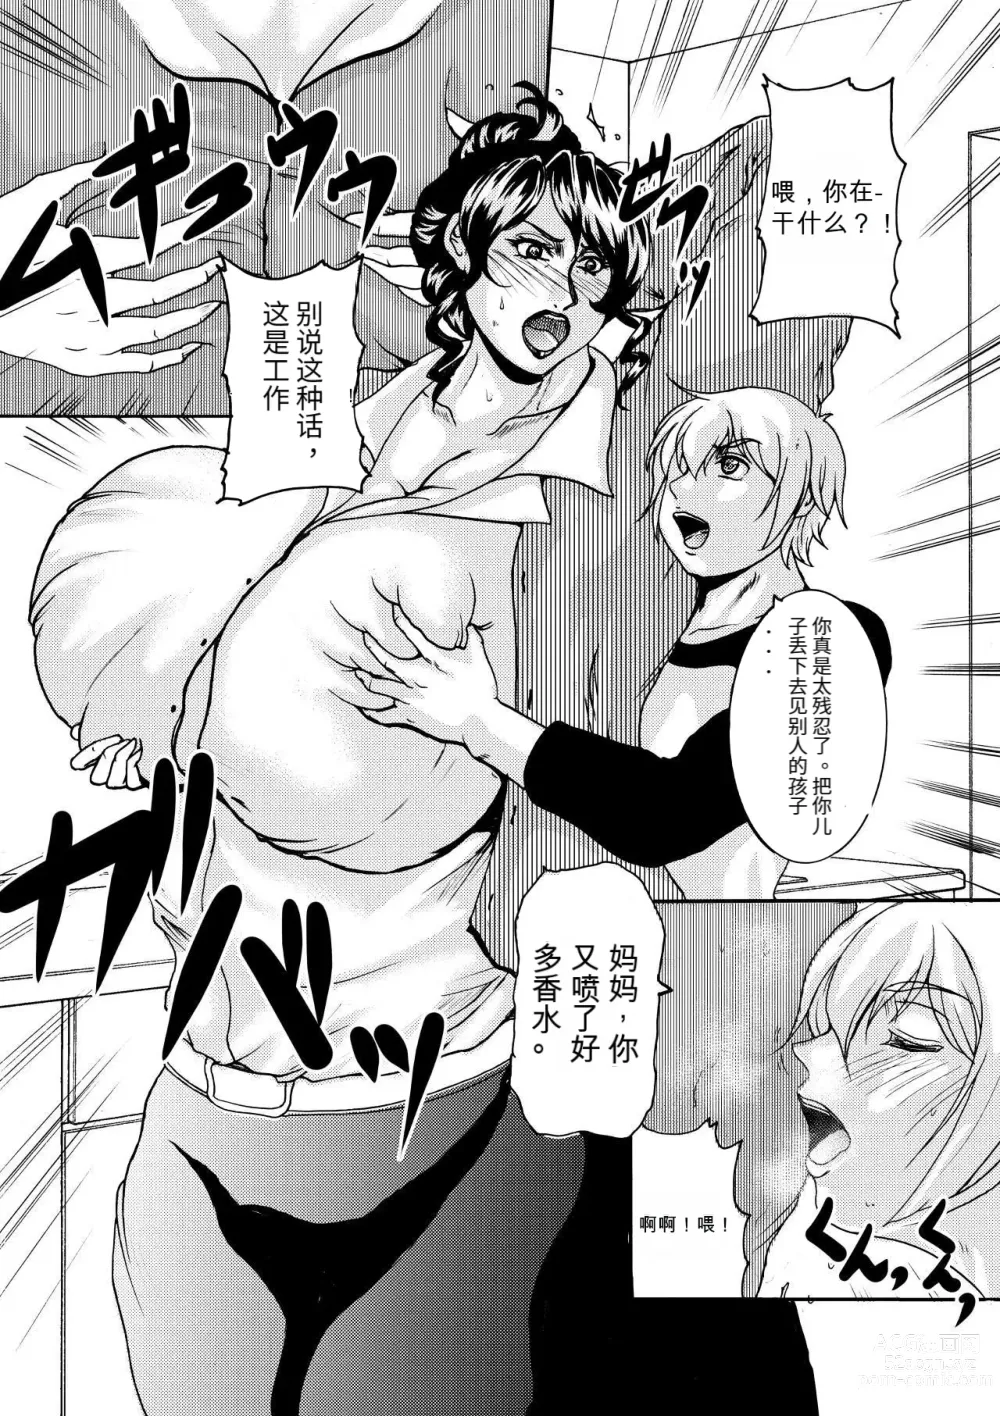 Page 2 of manga NO CARE